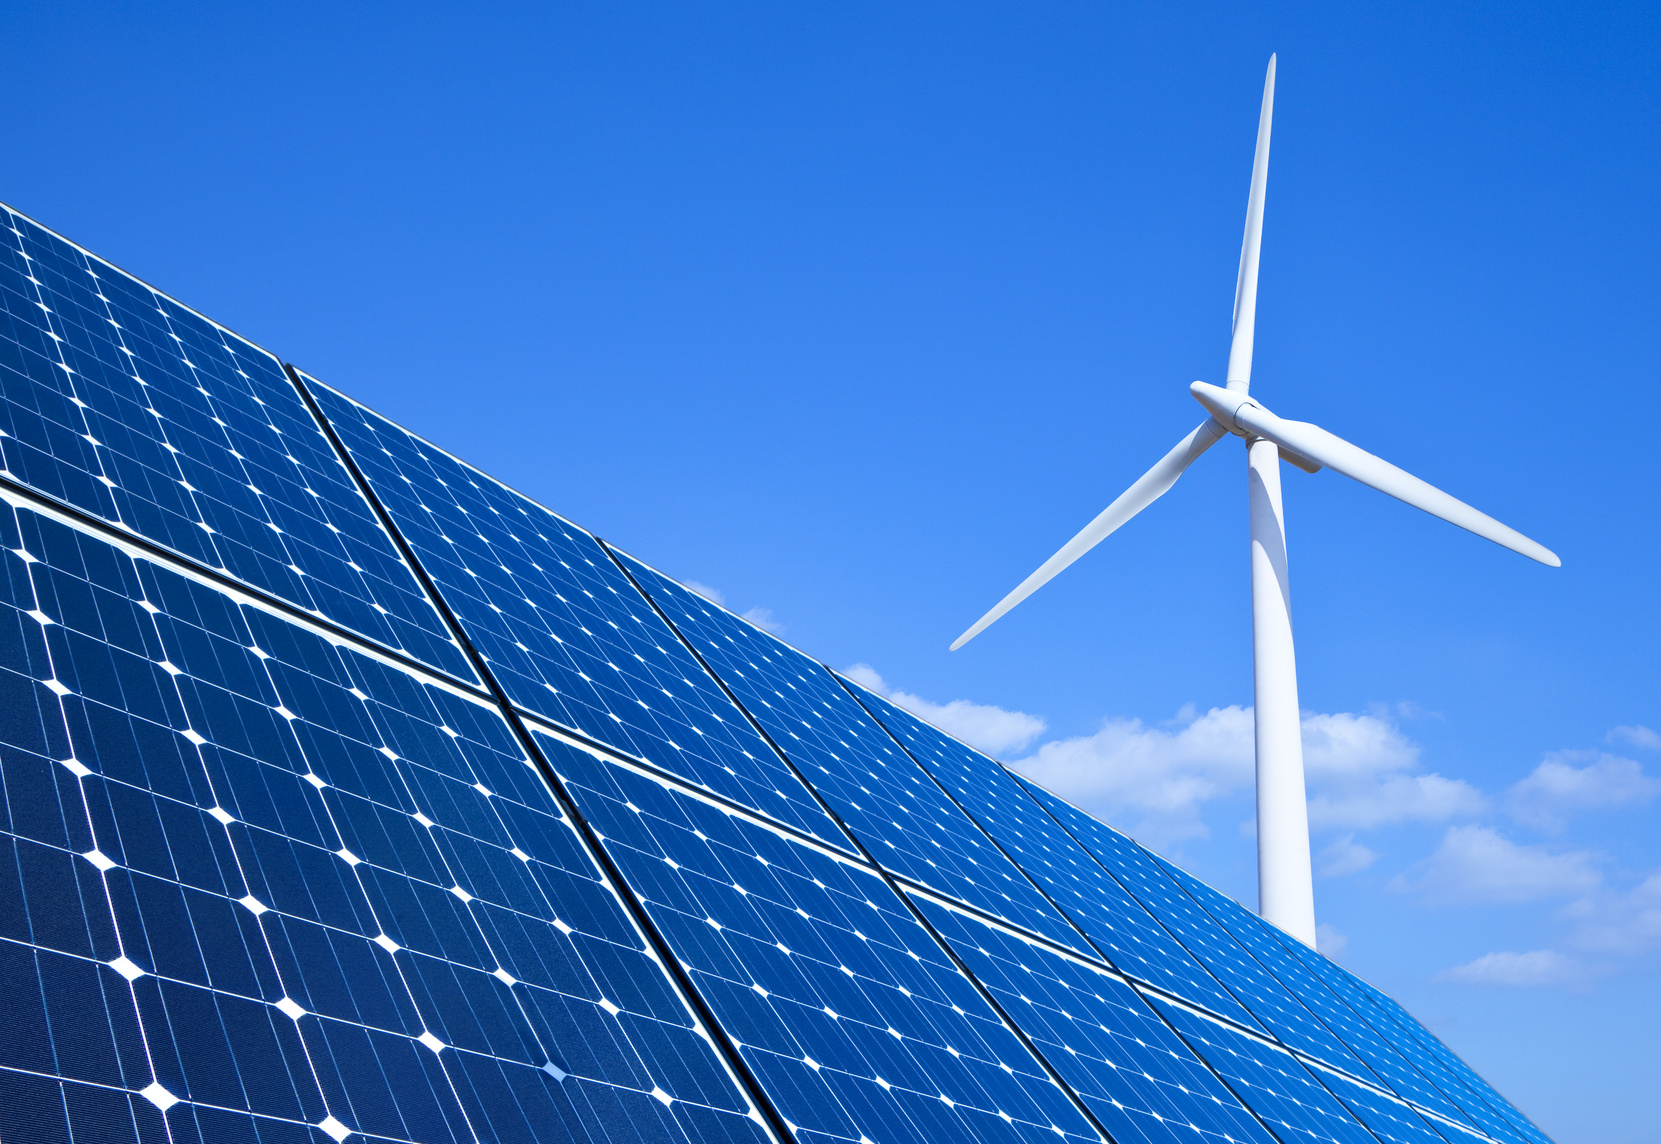 La Fondazione Einaudi presenta due ricette per le energie rinnovabili. Studio europeo si concentra su accordi acquisto Ppa, comunità Cer